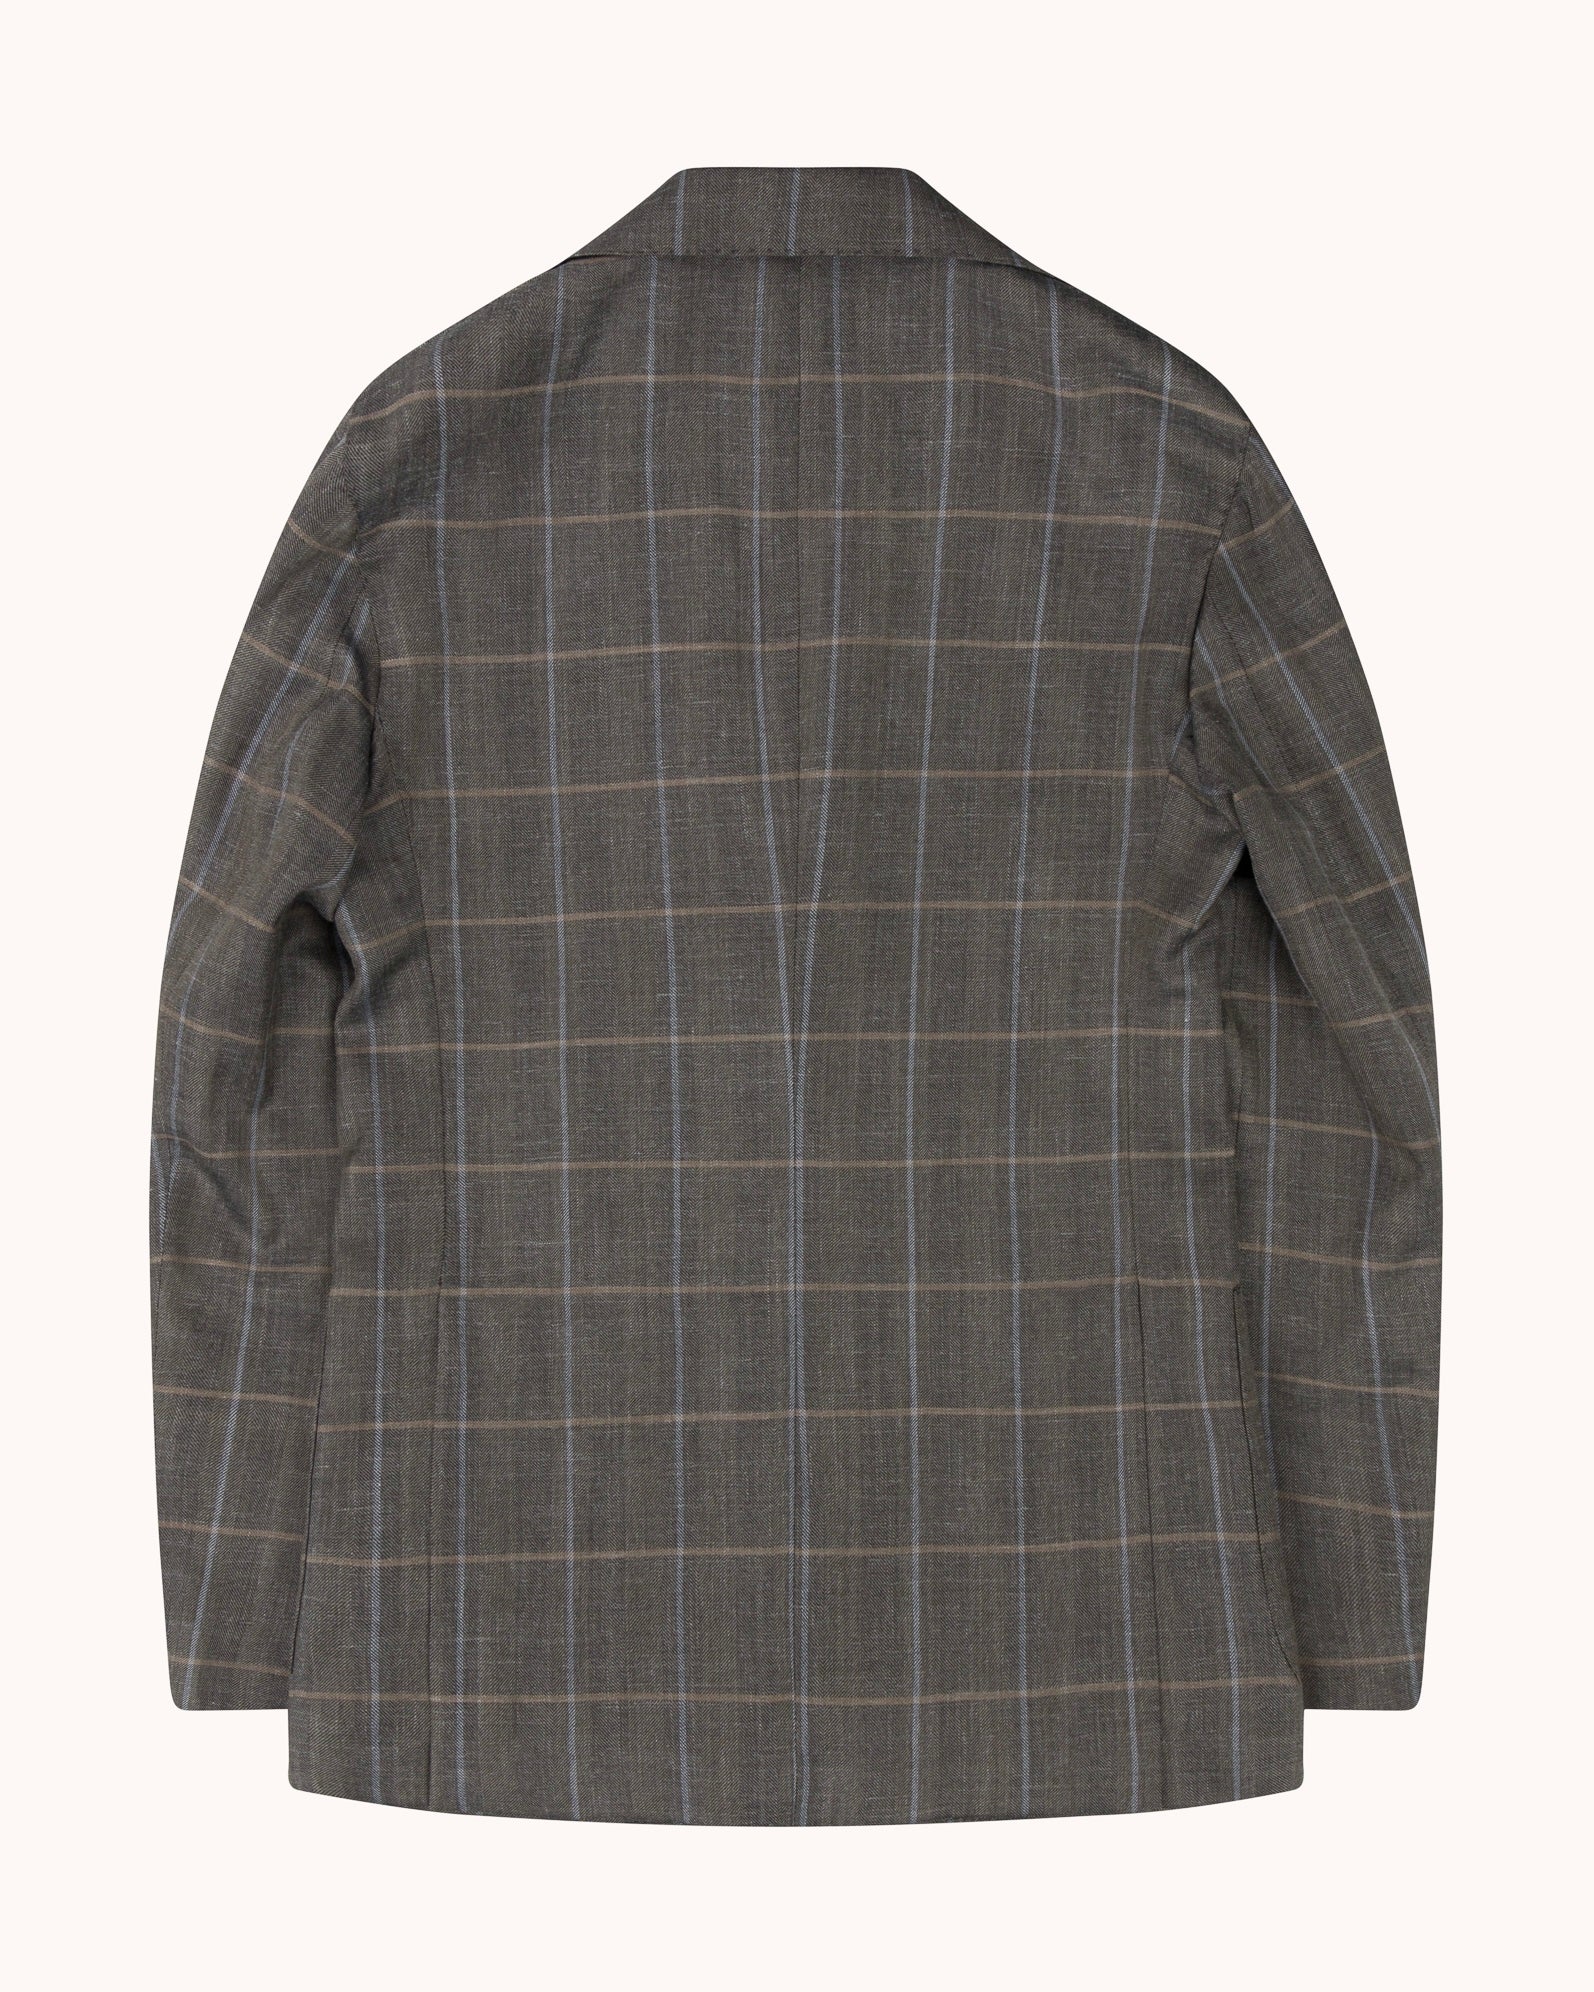 Sport Jacket - Dark Olive Check Wool Silk Linen